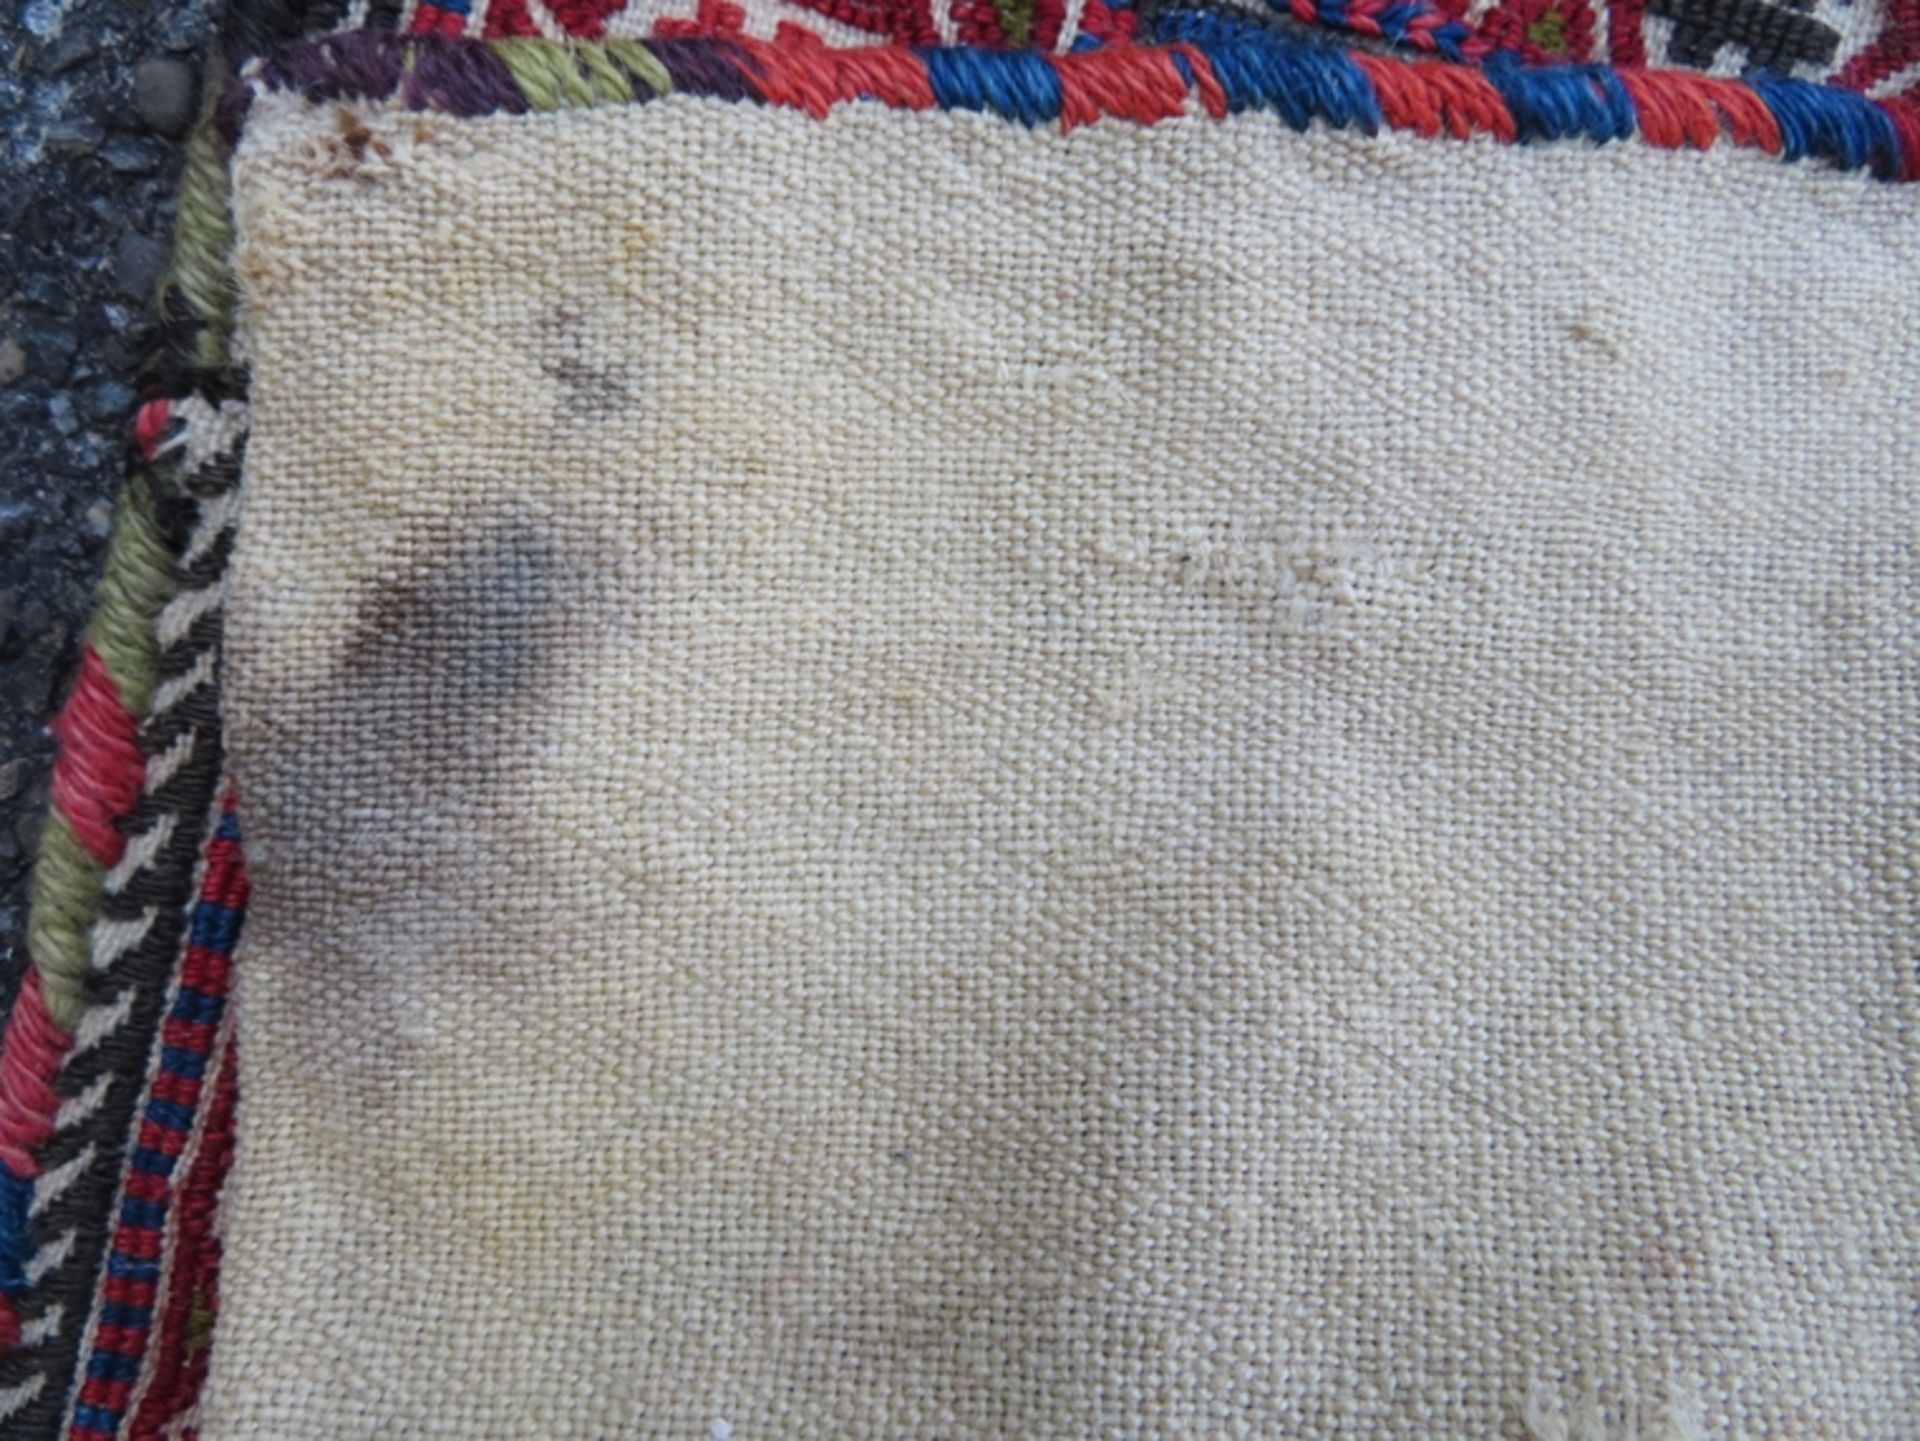 Seltene Satteltasche, Sumach, alt, ca. 128 x 46 cm. - Bild 4 aus 4